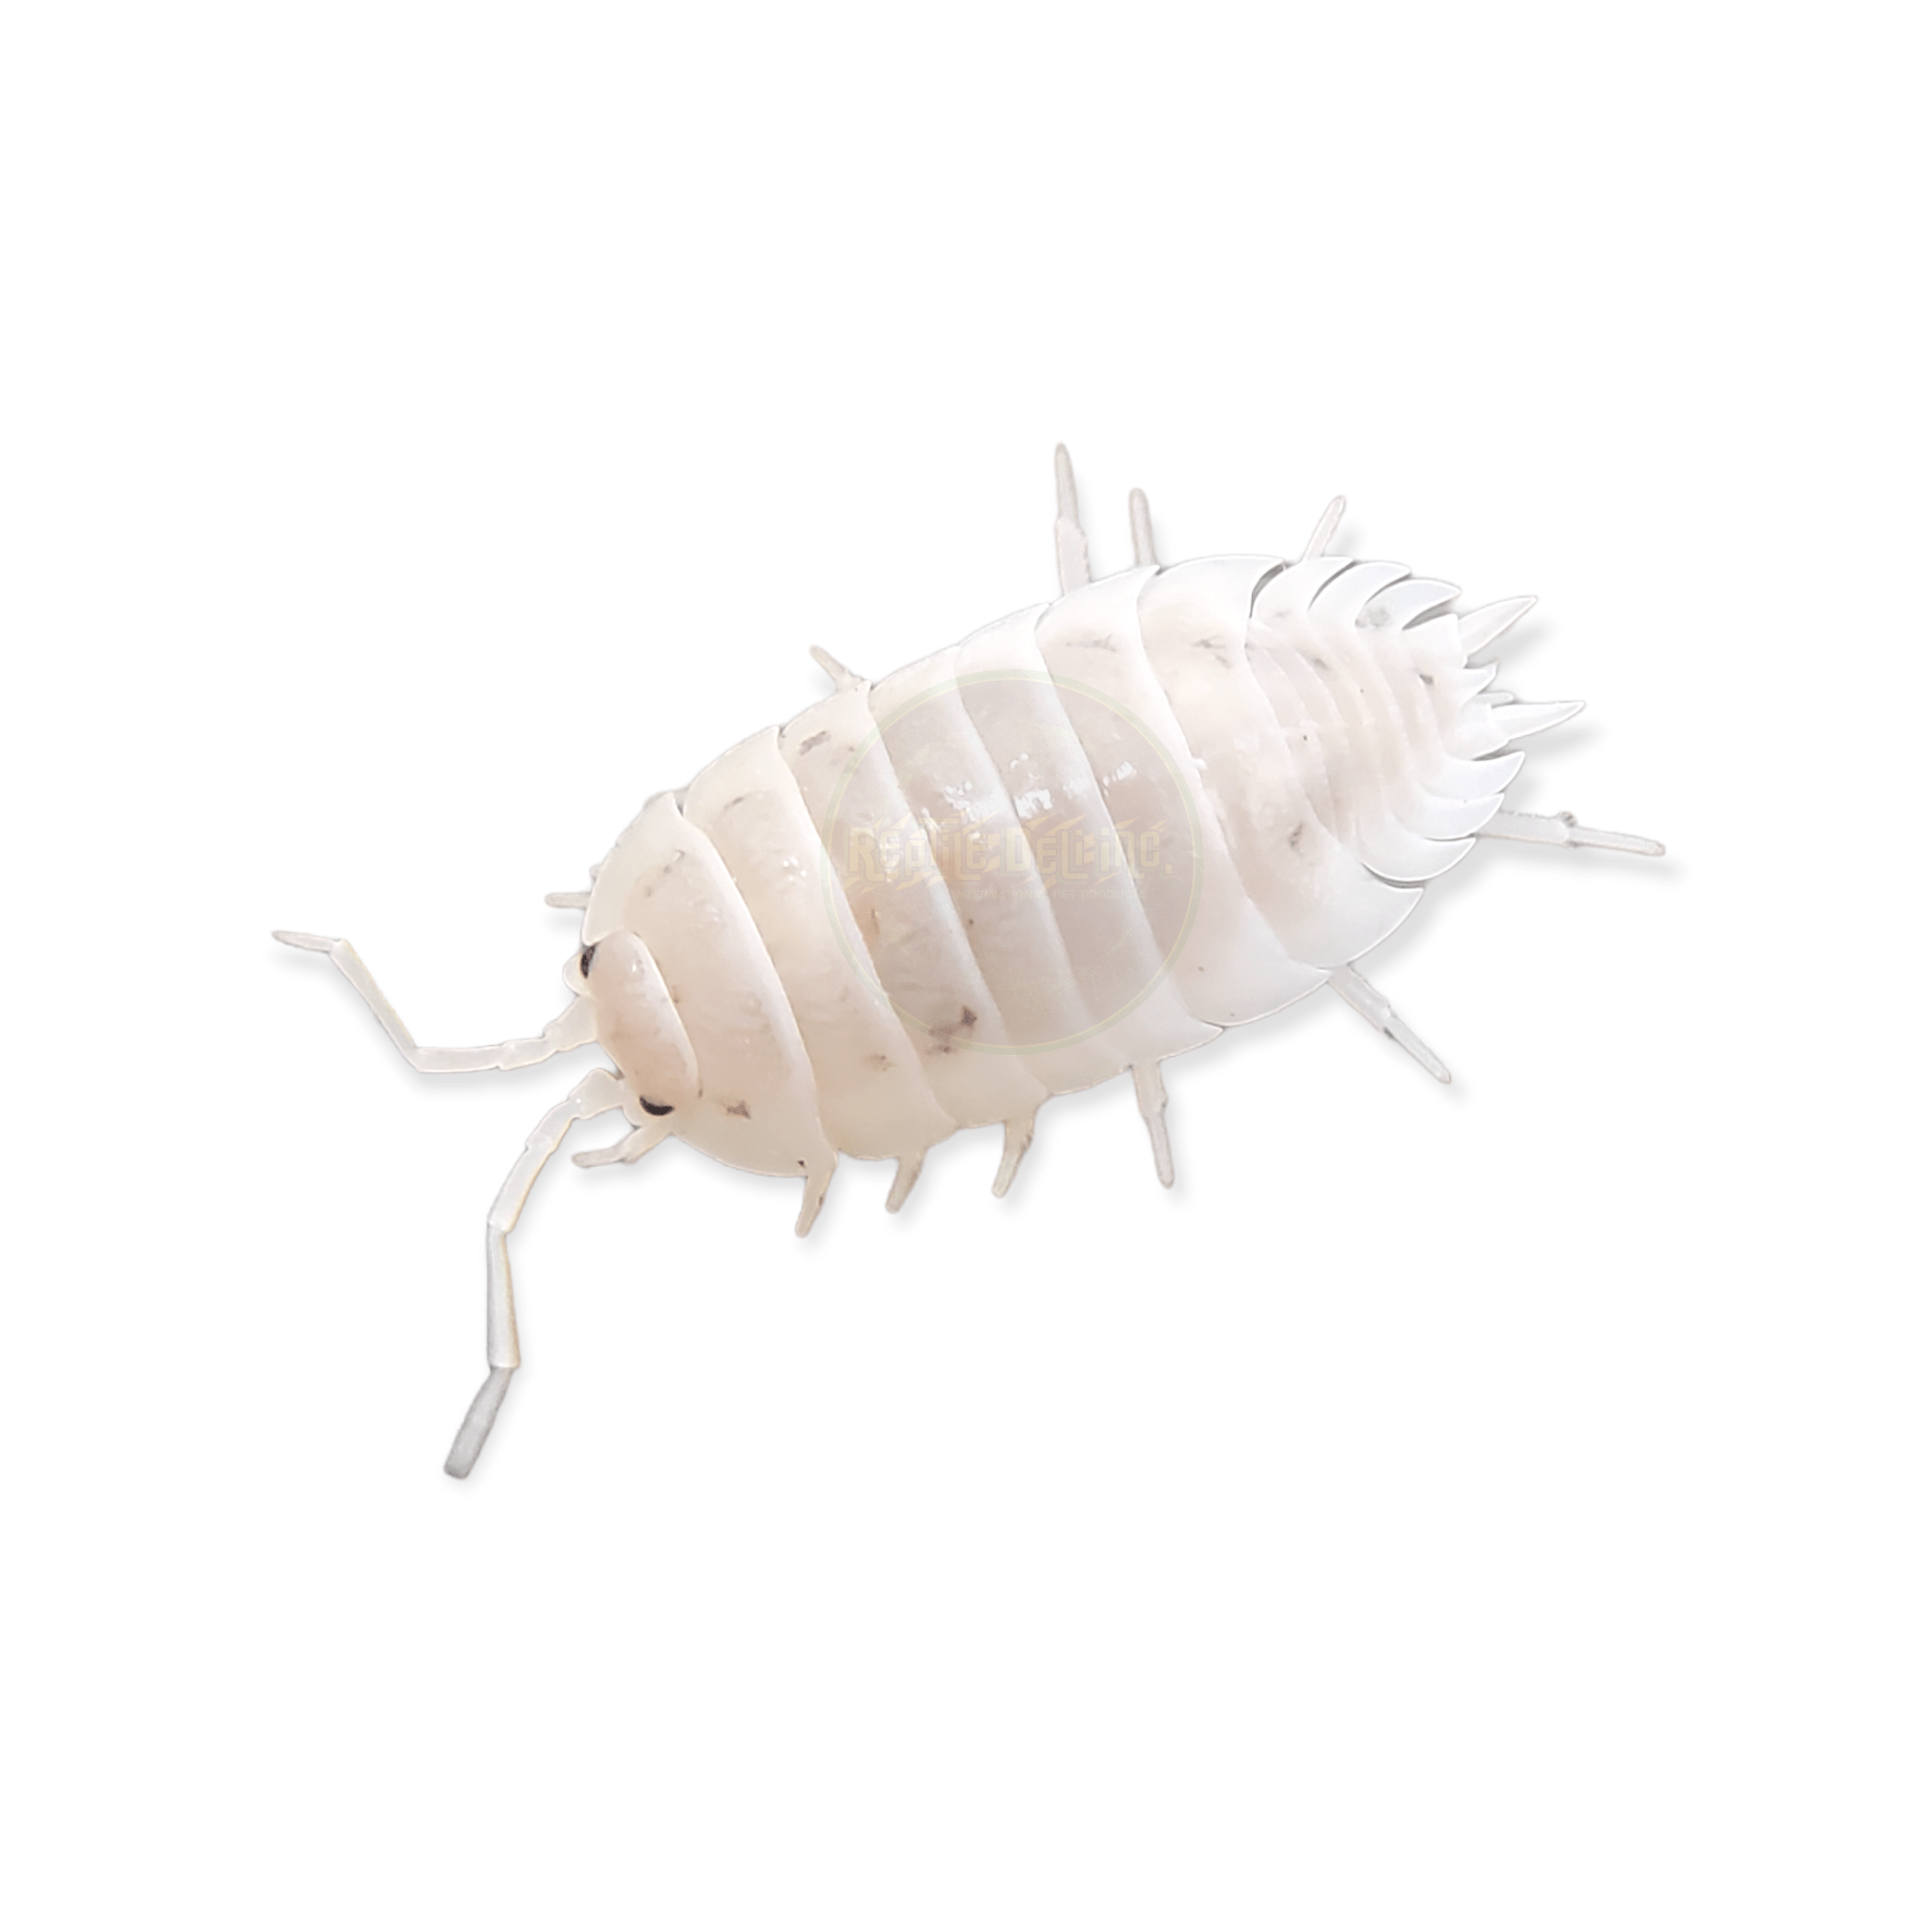 White - Porcellio Laevis Isopods (12 Count) - Reptile Deli Inc.